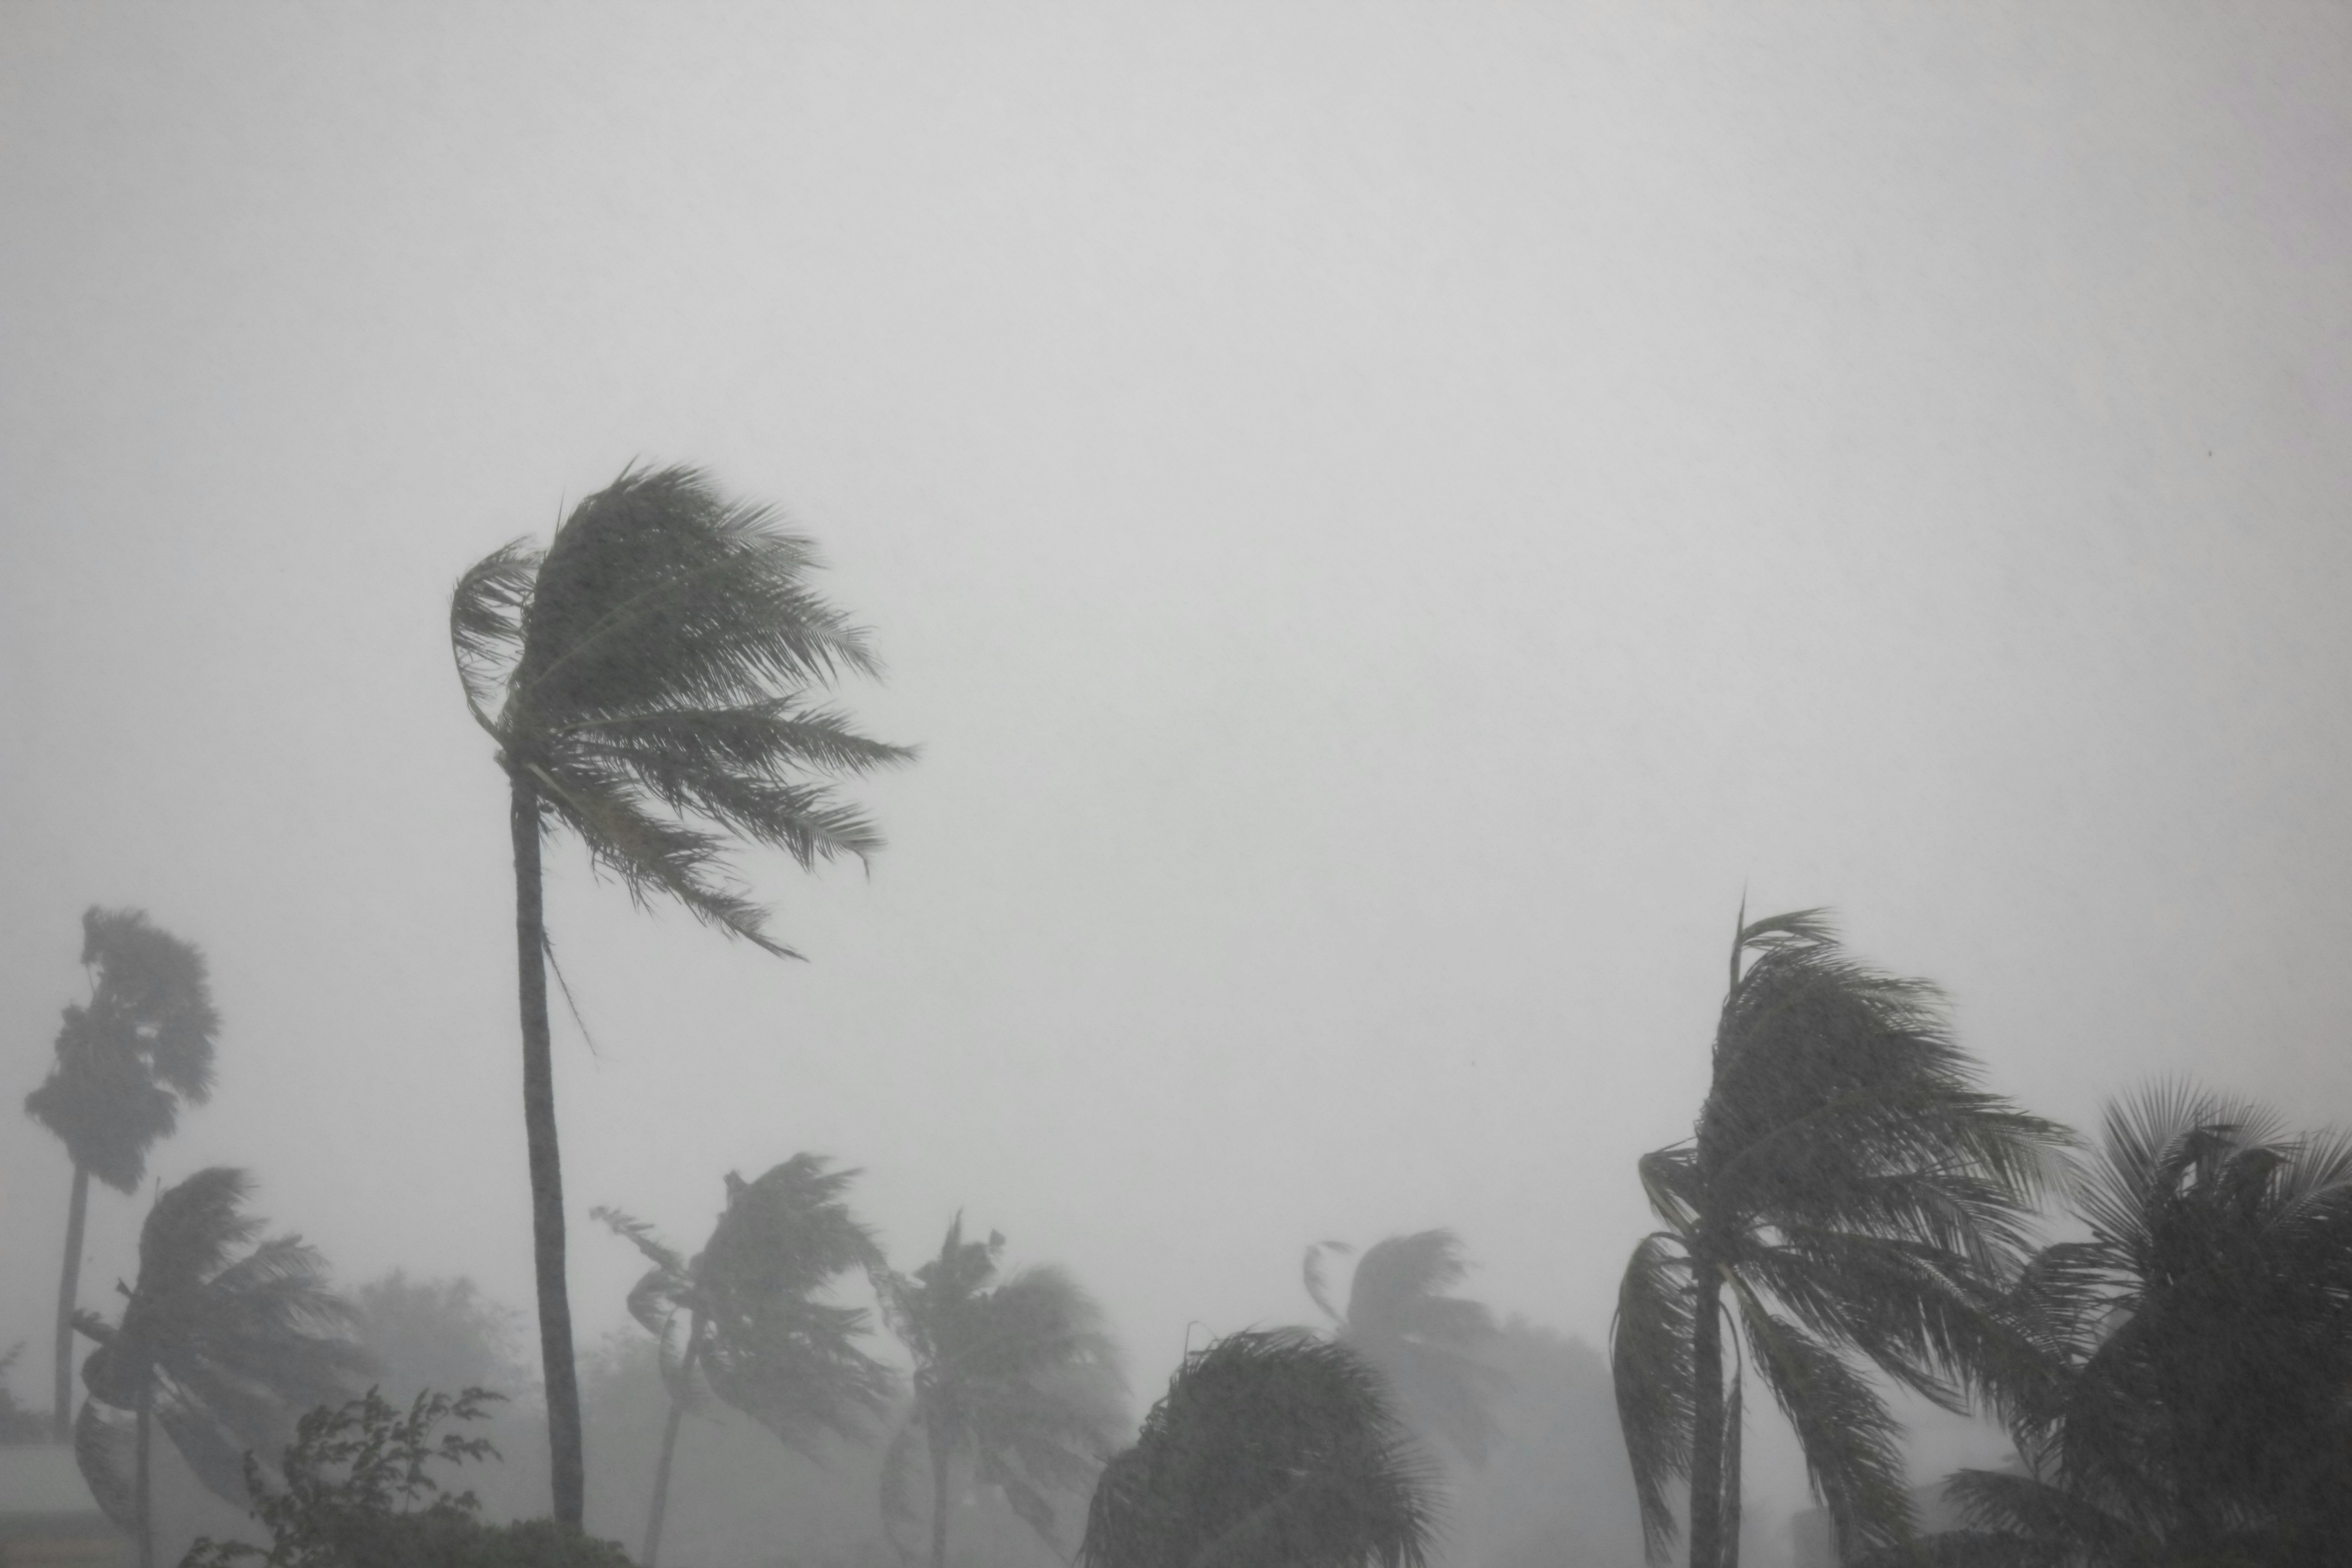 Palmové stromy ohnuté v silném větru a bouři přicházejícího tornáda